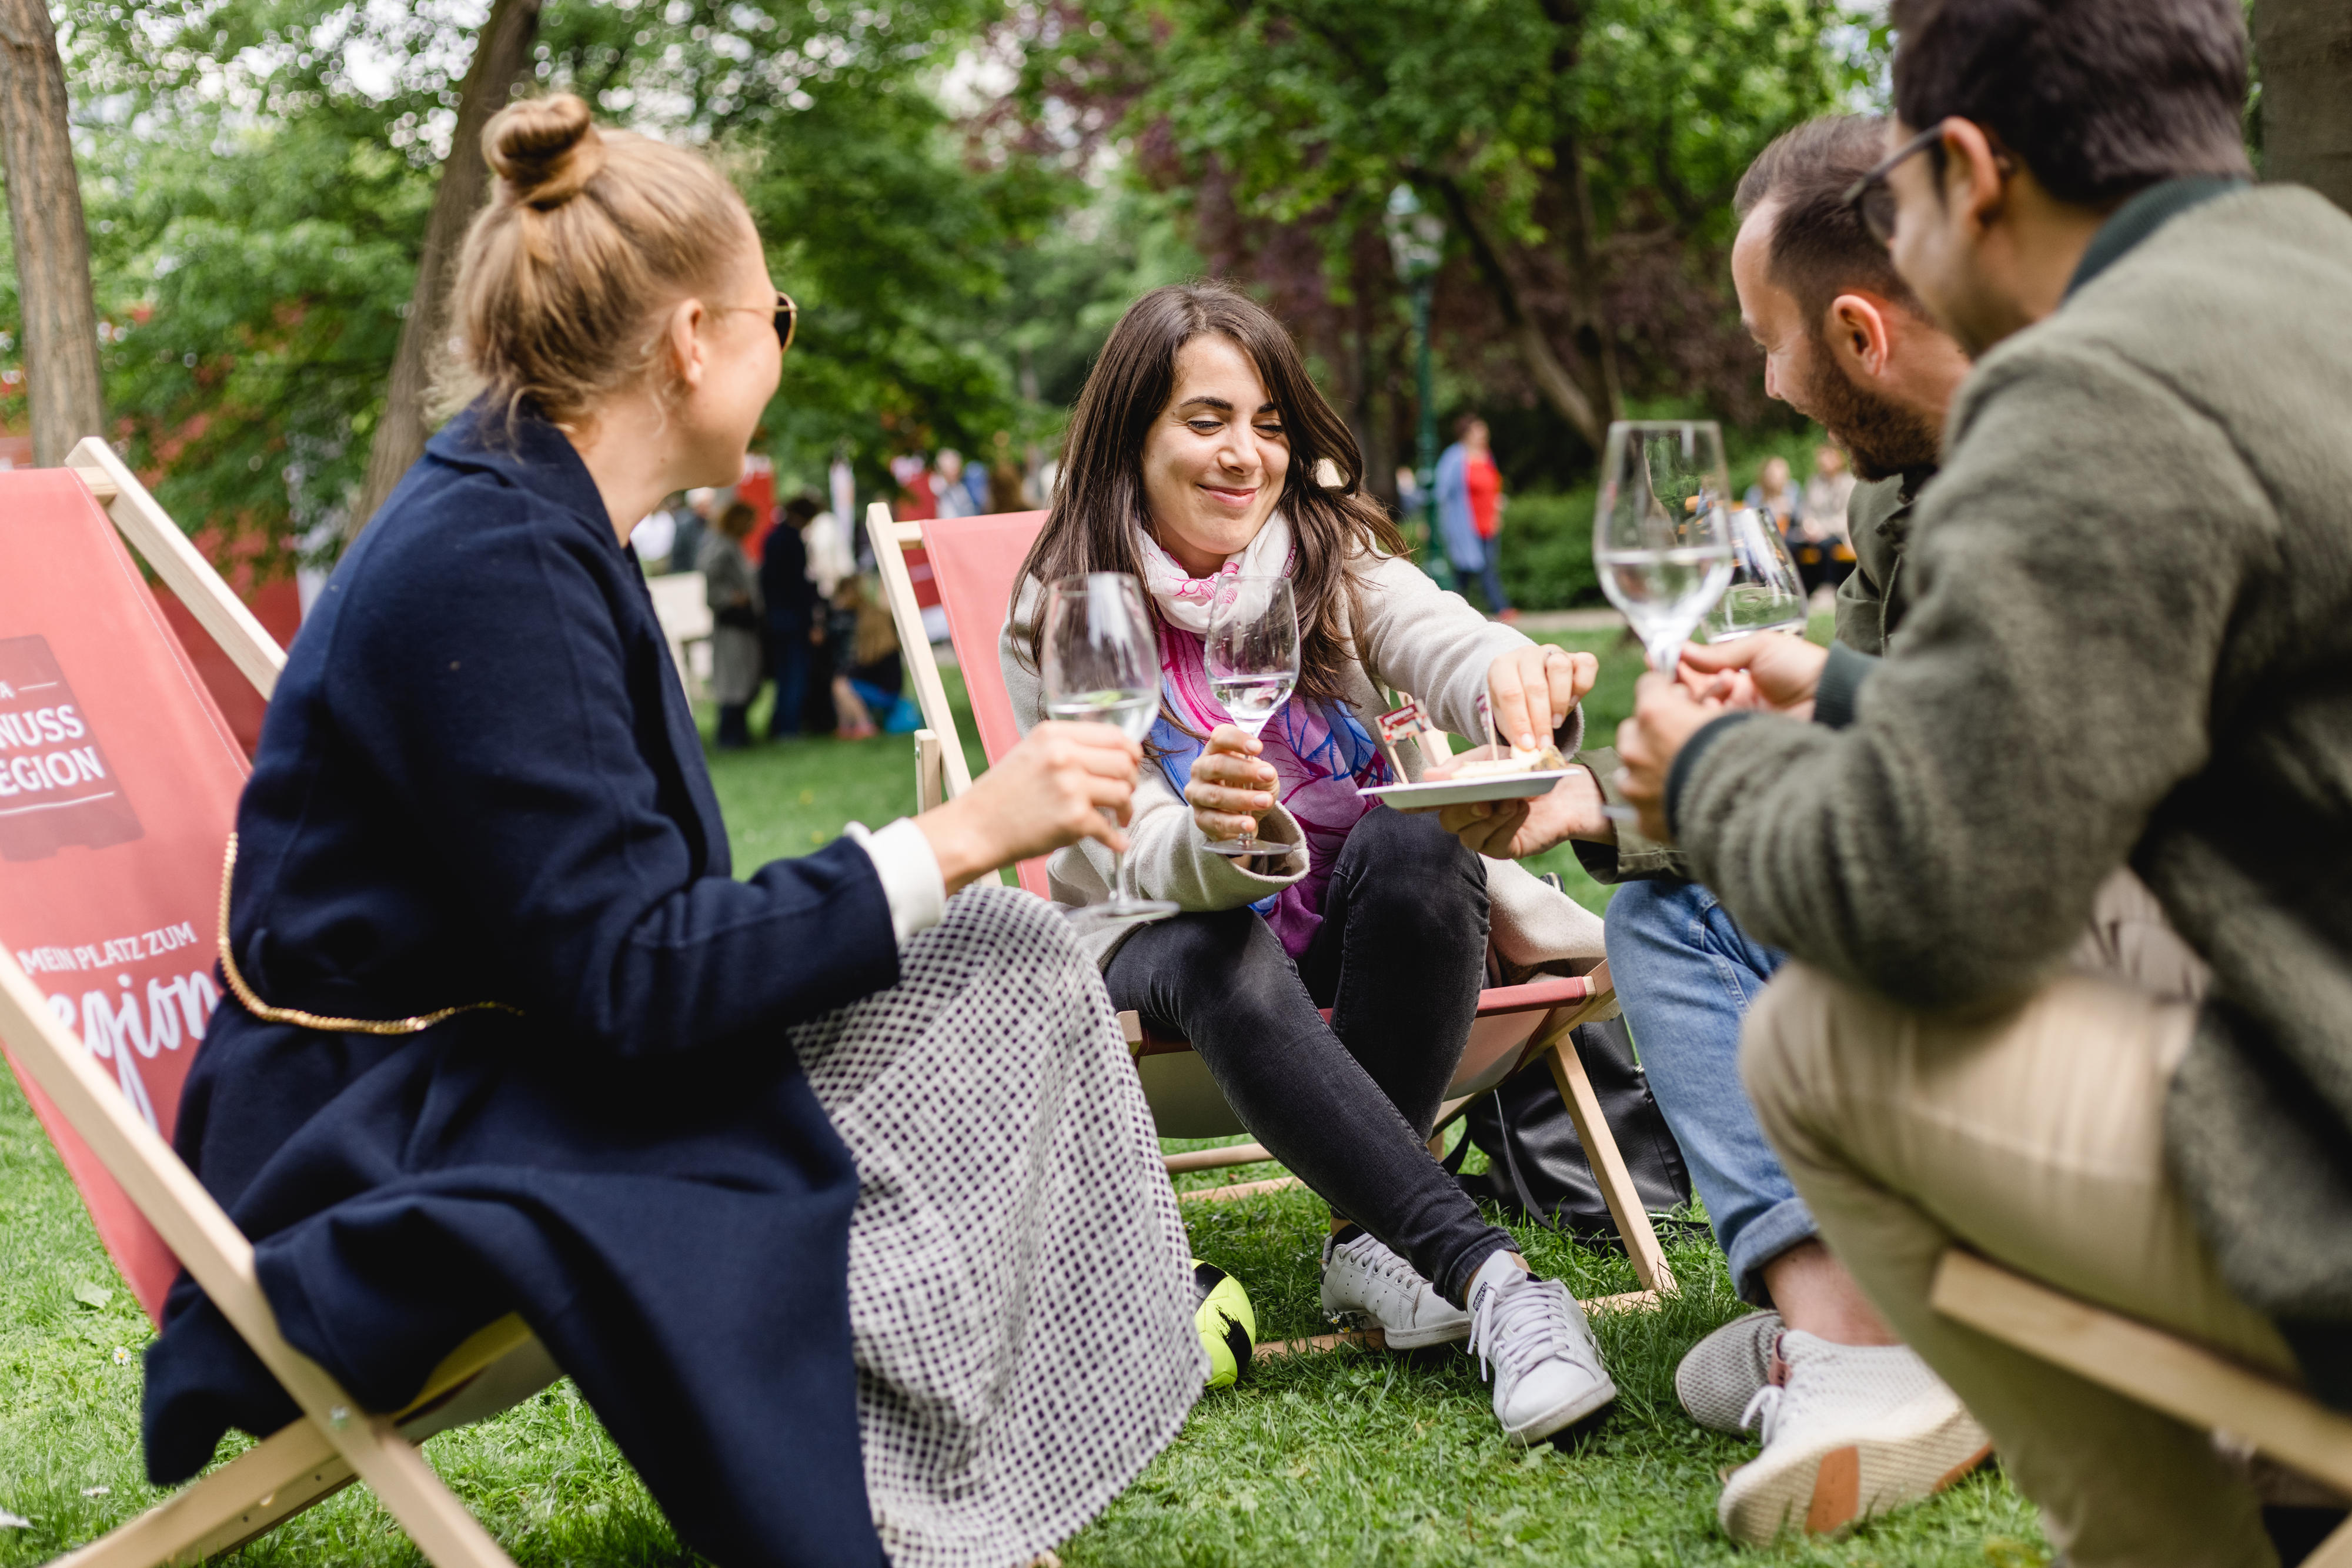 Menschen beim Genuss-Festival im Wiener Stadtpark 